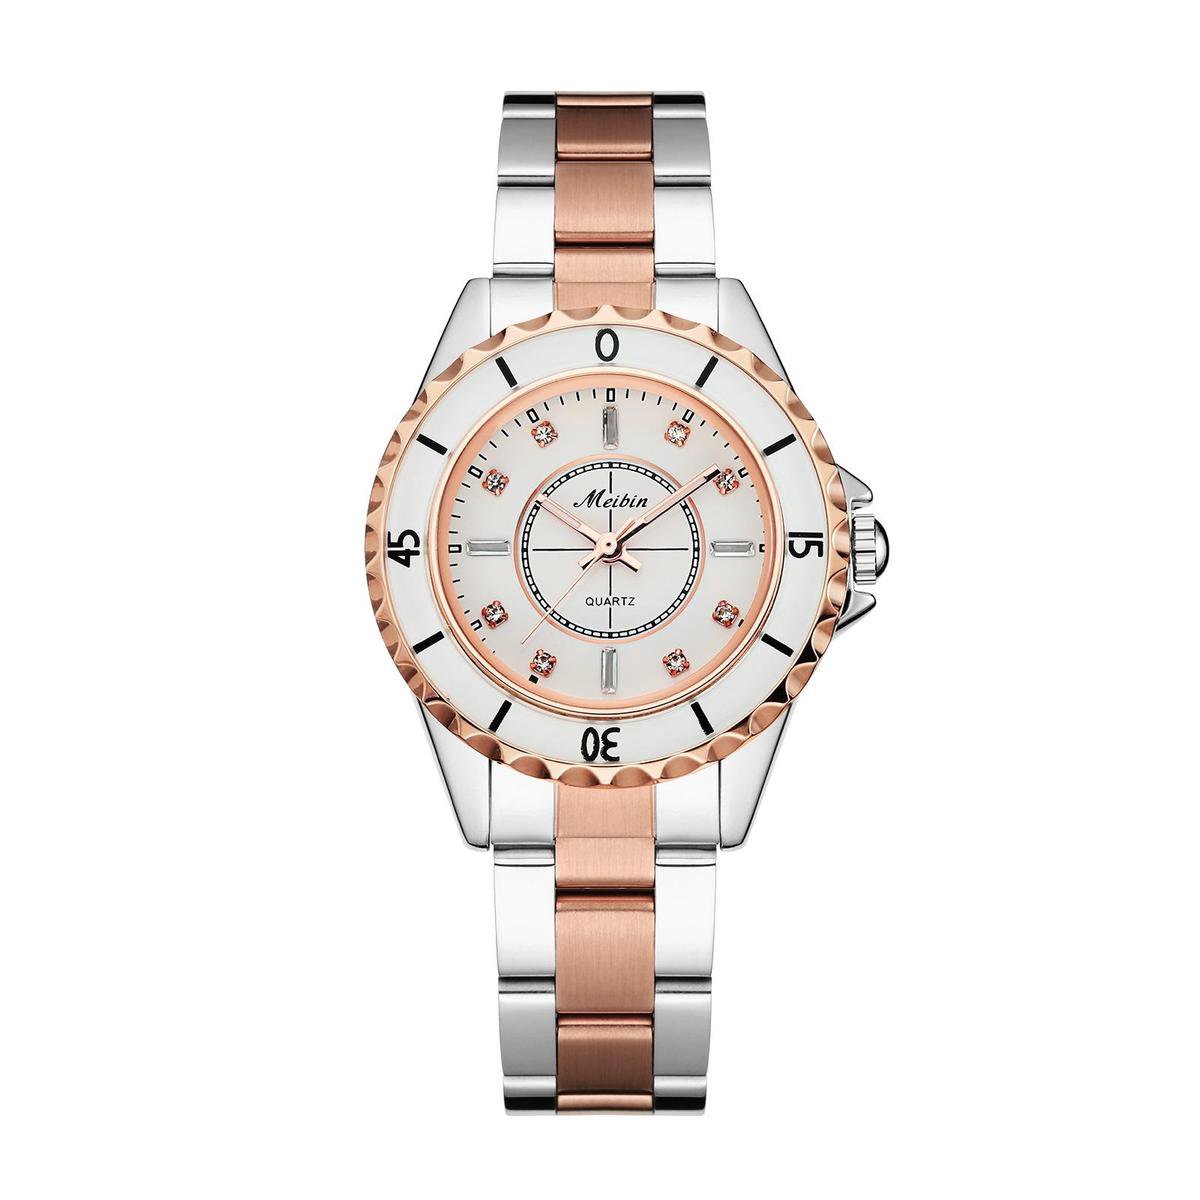 Longbo - Meibin - Dames Horloge - Rosé/Zilver/Wit - 36mm